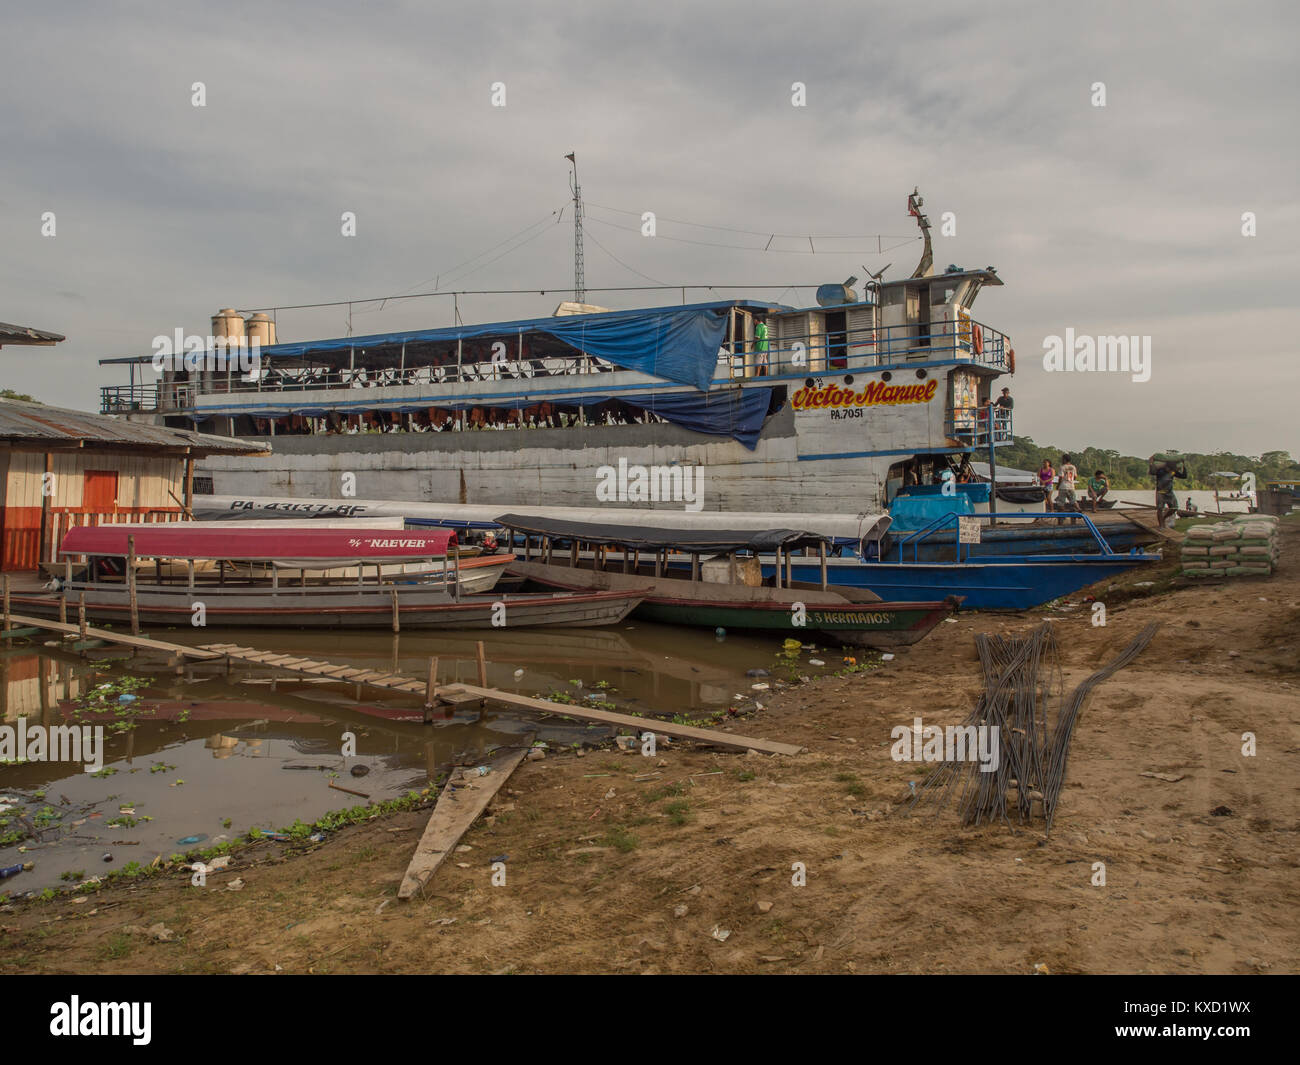 Caballococha, Peru - Dec 11, 2017: Cargo boat in the port on the Amazon river. Stock Photo